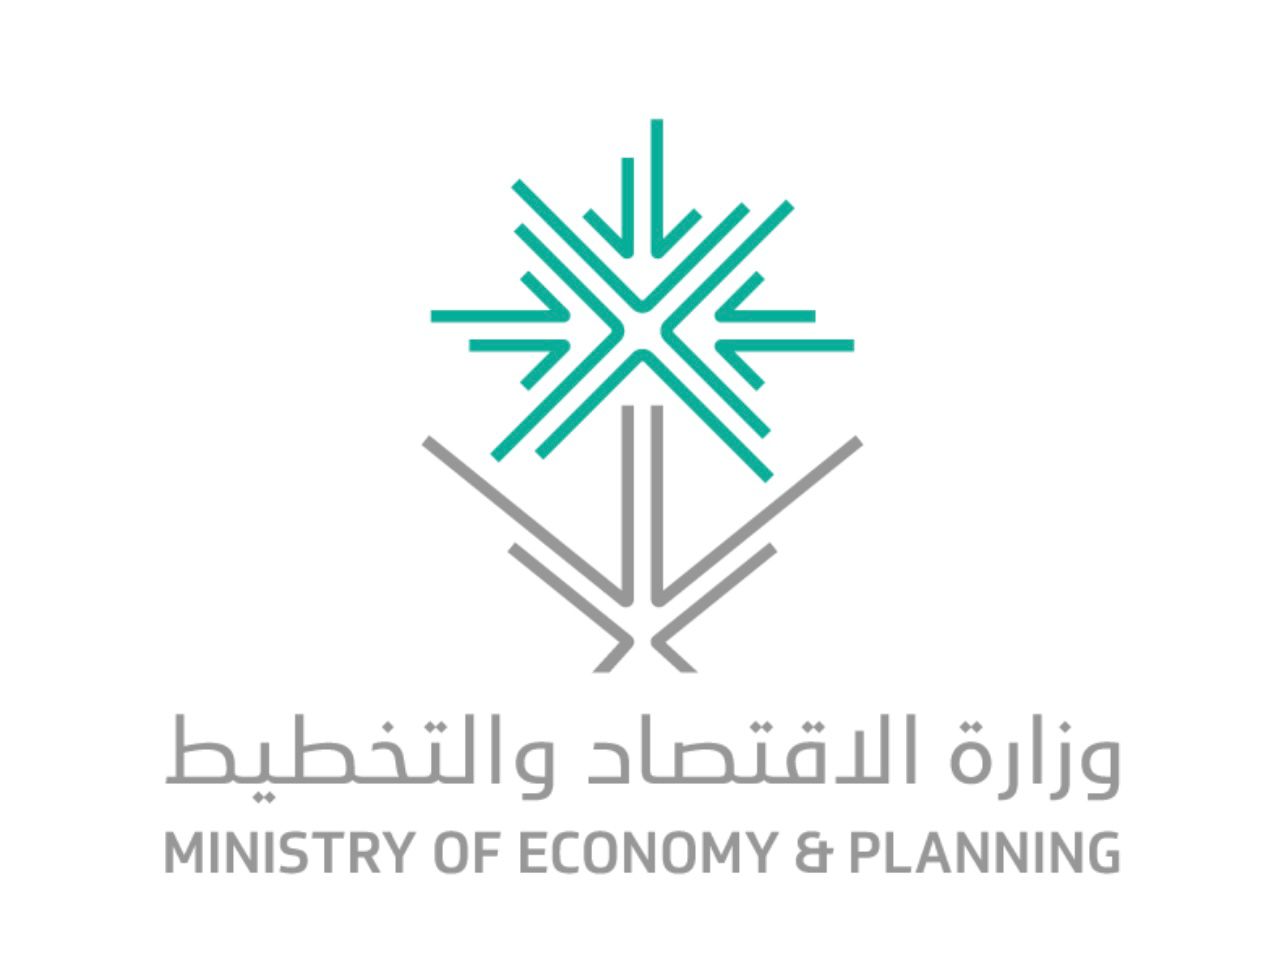 وزارة الاقتصاد والتخطيط السعودية تطلق مؤشرًا استباقيًا (MEPX) يستقرئ الأداء الاقتصادي للقطاع الخاص